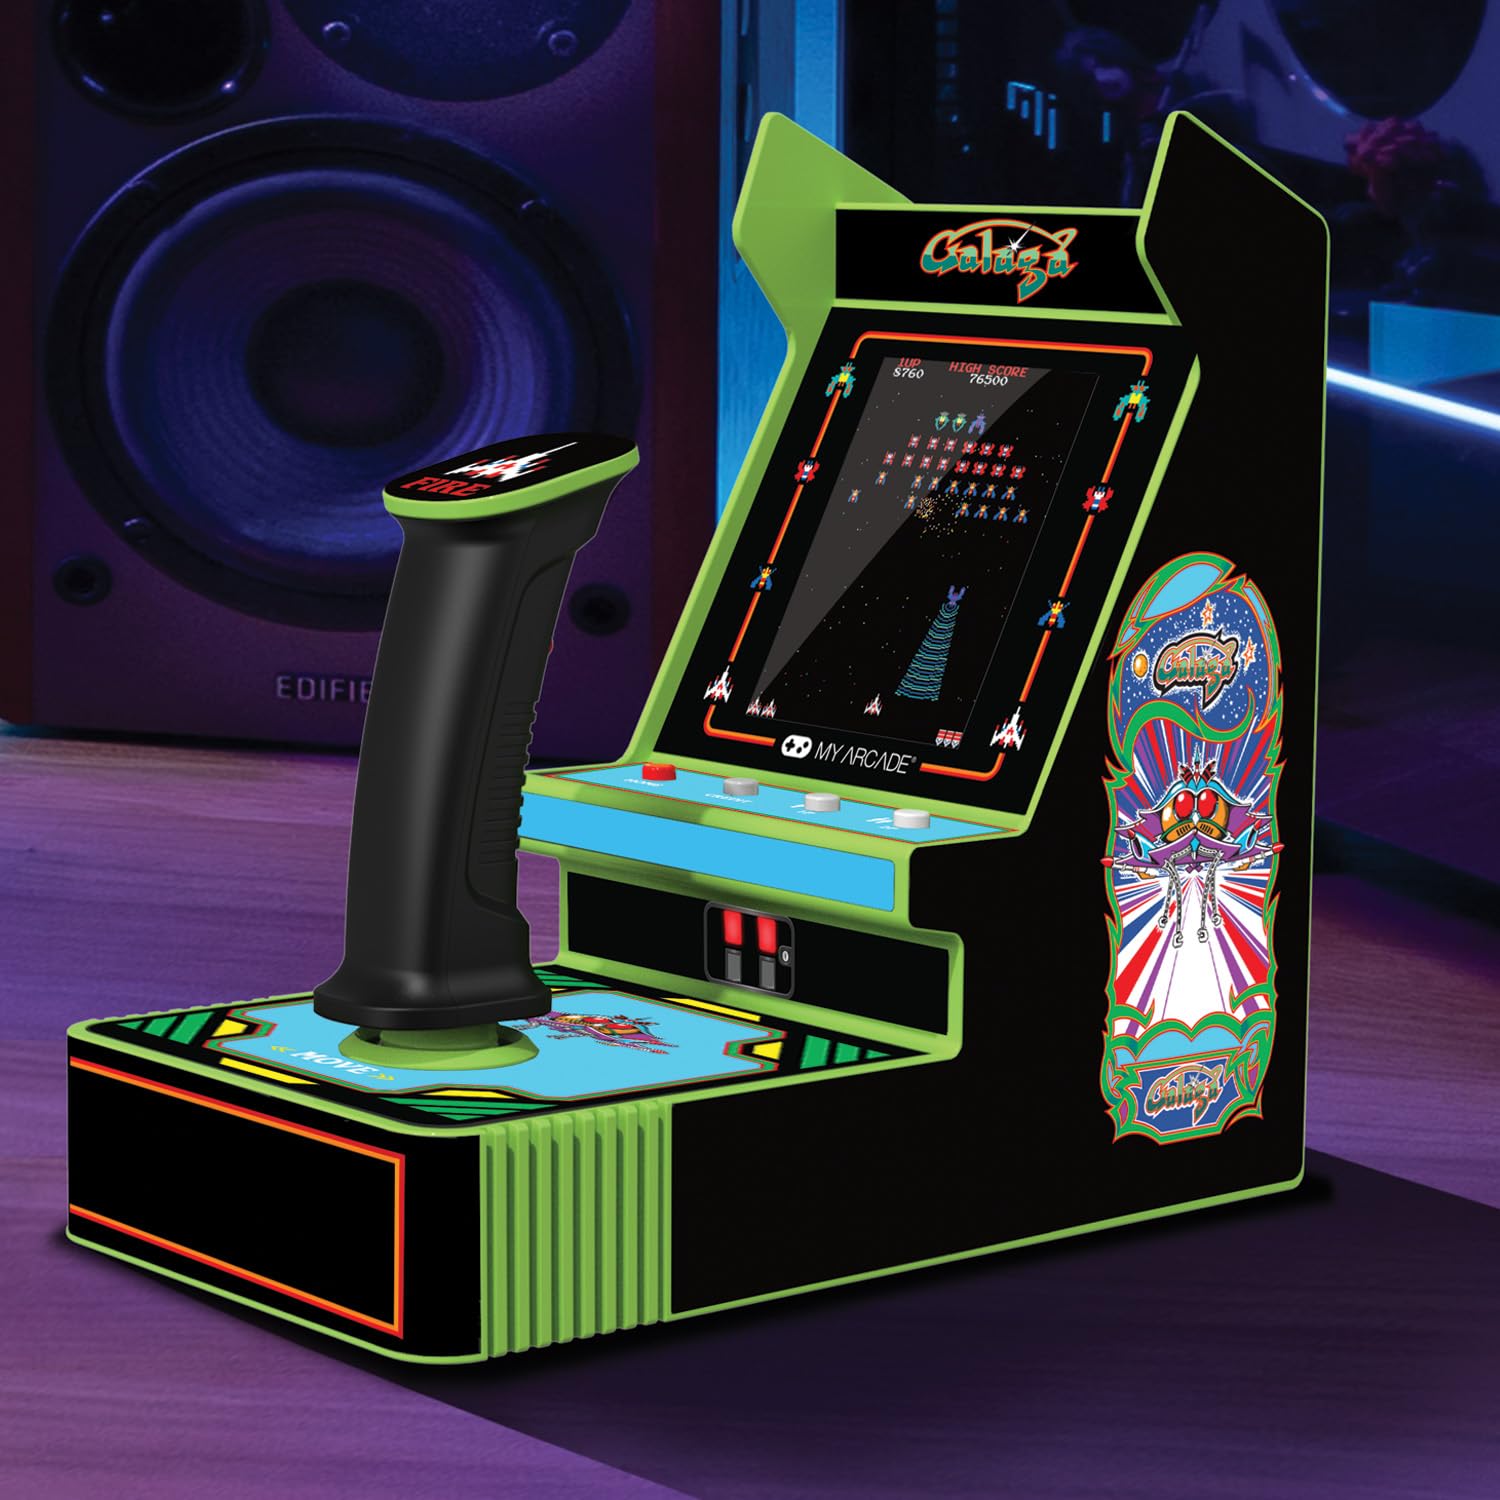 My Arcade Galaga Joystick Player : Galaga/Galaxian, 3.2